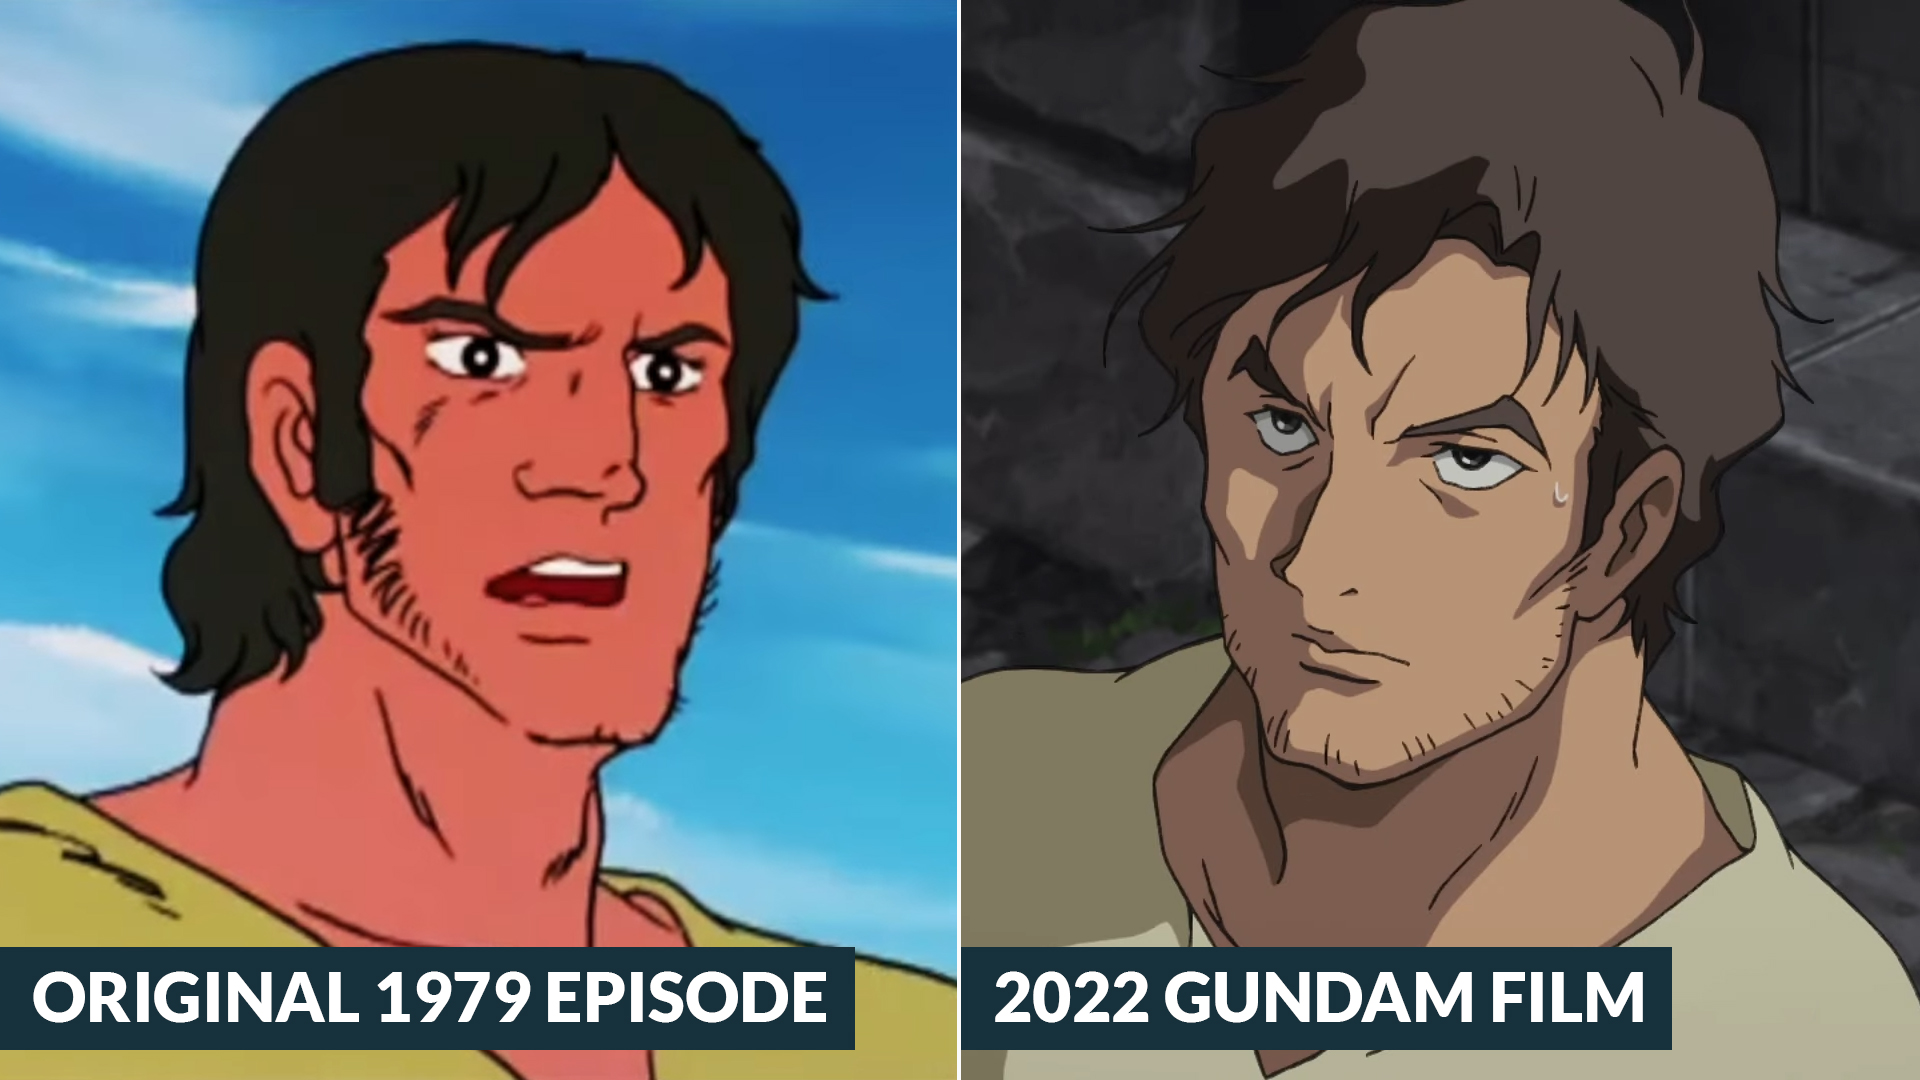 Mobile Suit Gundam Cucuruz Doan's Island - Comparison